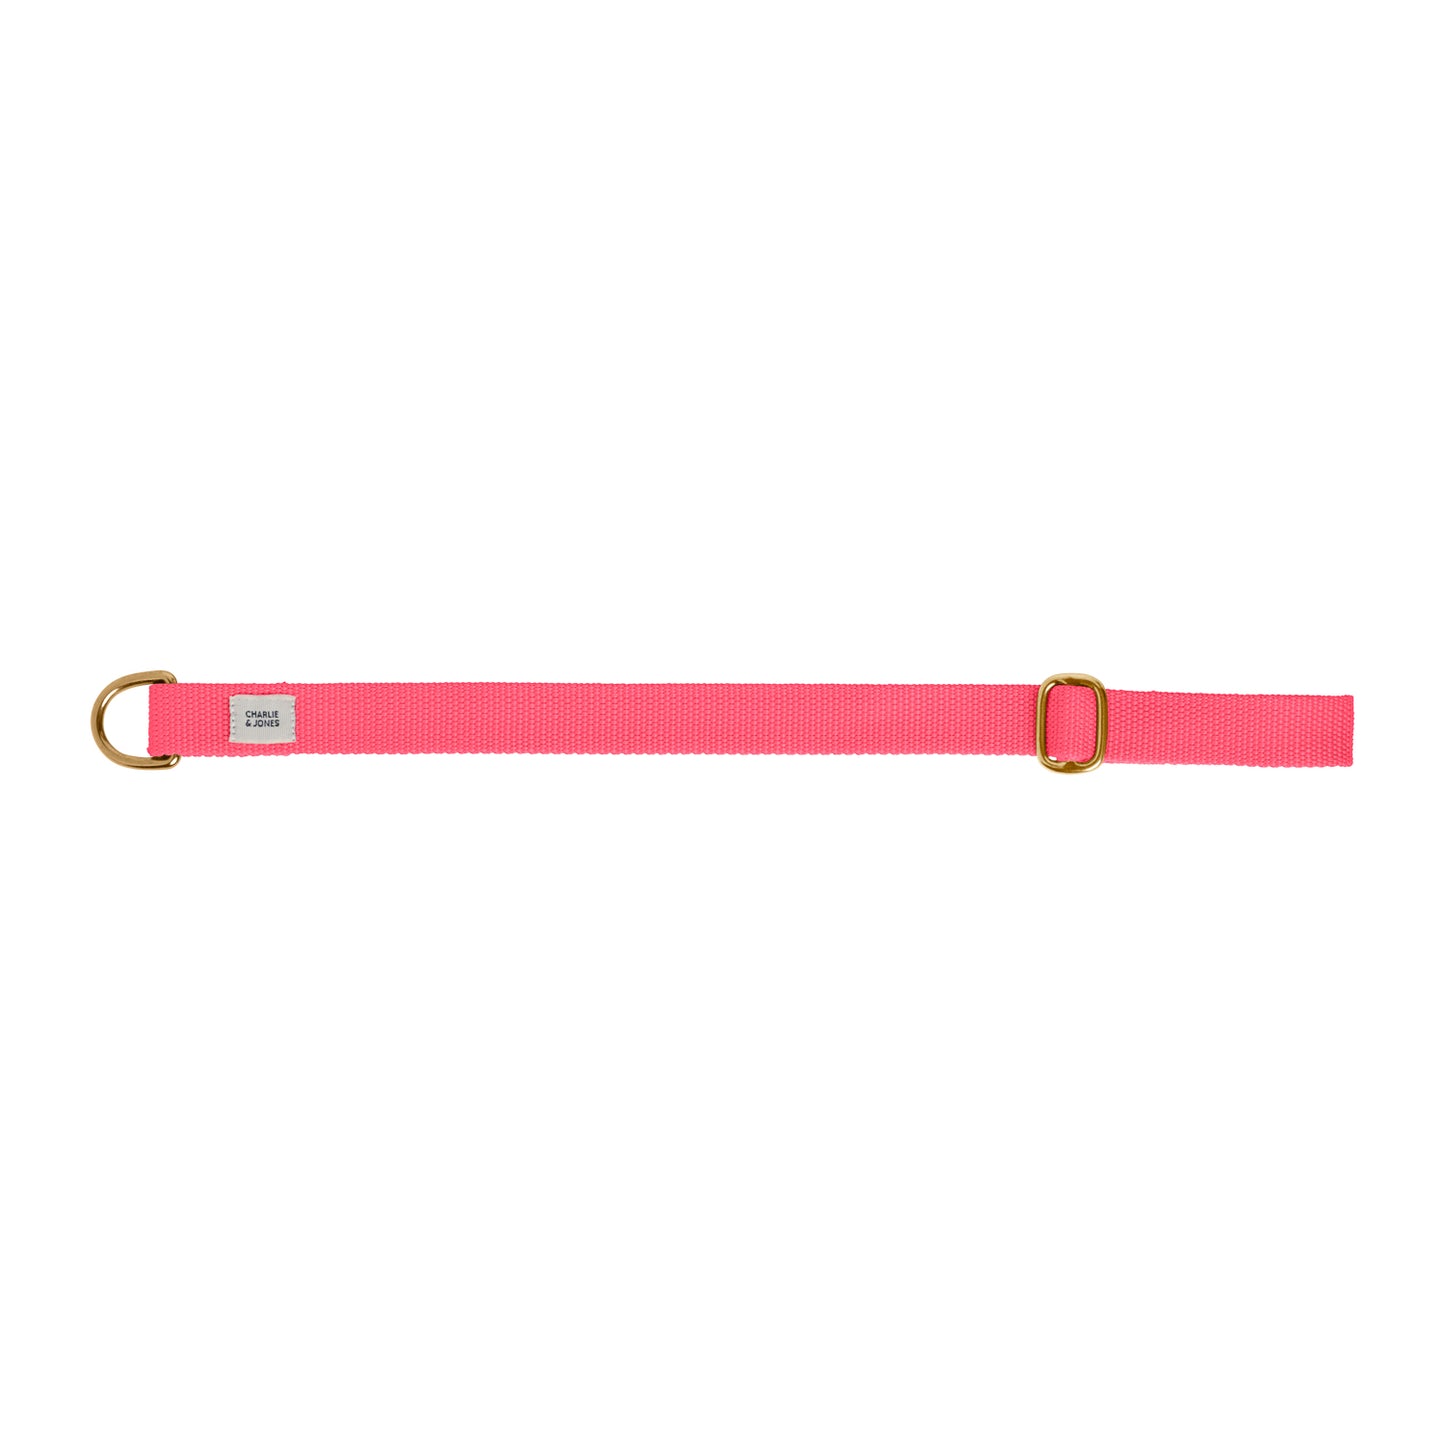 Halsband met naam Pink Gold